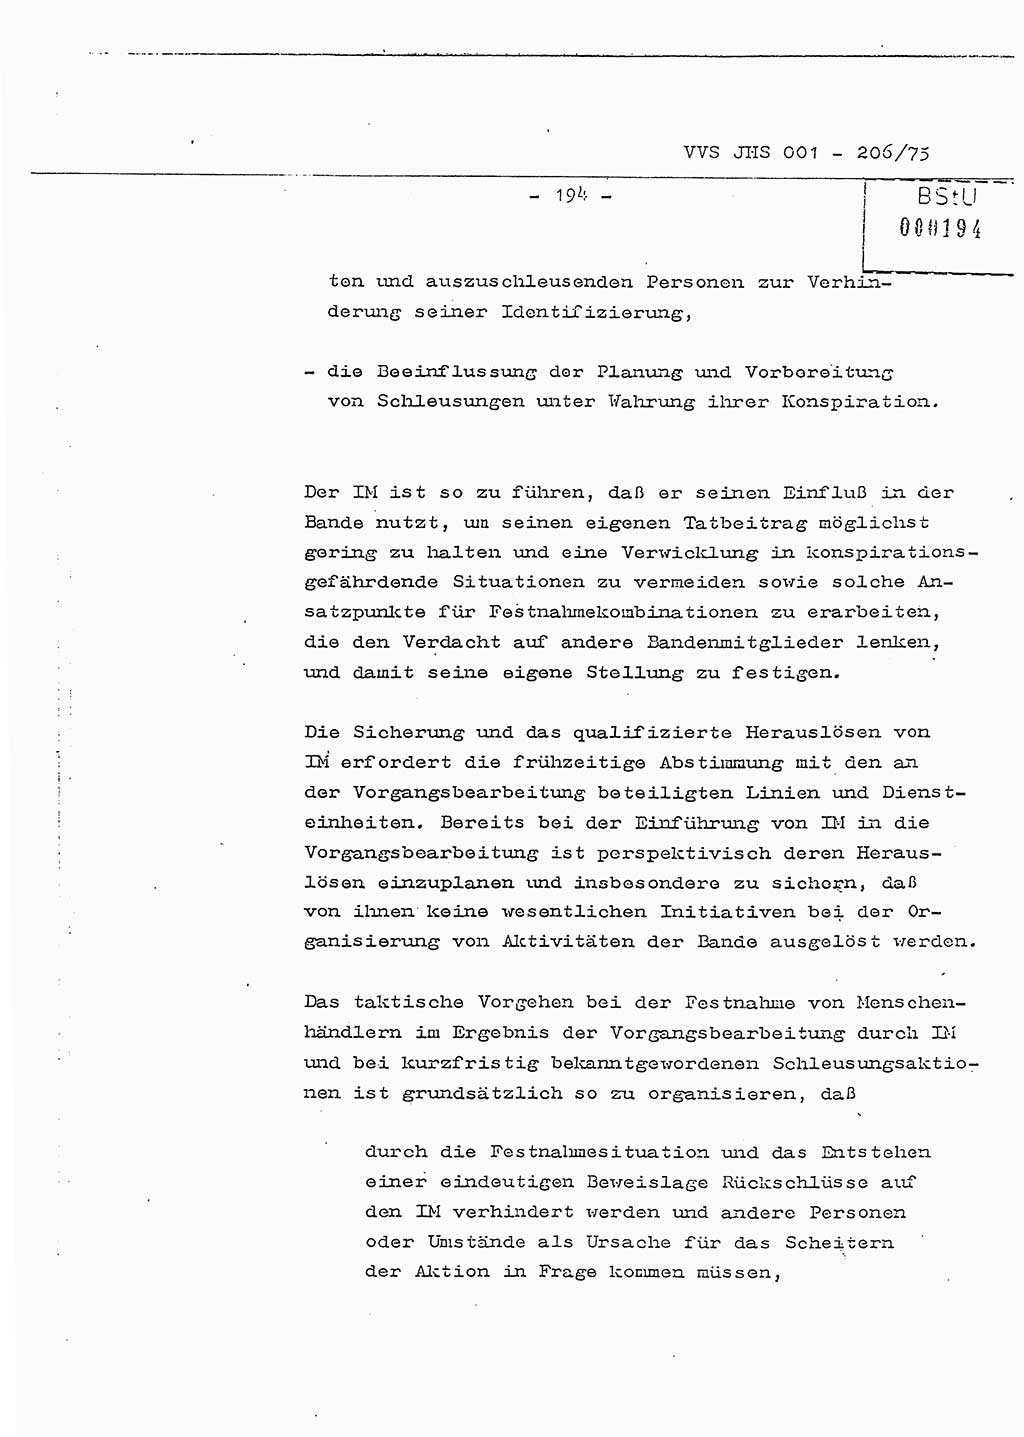 Dissertation Generalmajor Manfred Hummitzsch (Leiter der BV Leipzig), Generalmajor Heinz Fiedler (HA Ⅵ), Oberst Rolf Fister (HA Ⅸ), Ministerium für Staatssicherheit (MfS) [Deutsche Demokratische Republik (DDR)], Juristische Hochschule (JHS), Vertrauliche Verschlußsache (VVS) 001-206/75, Potsdam 1975, Seite 194 (Diss. MfS DDR JHS VVS 001-206/75 1975, S. 194)